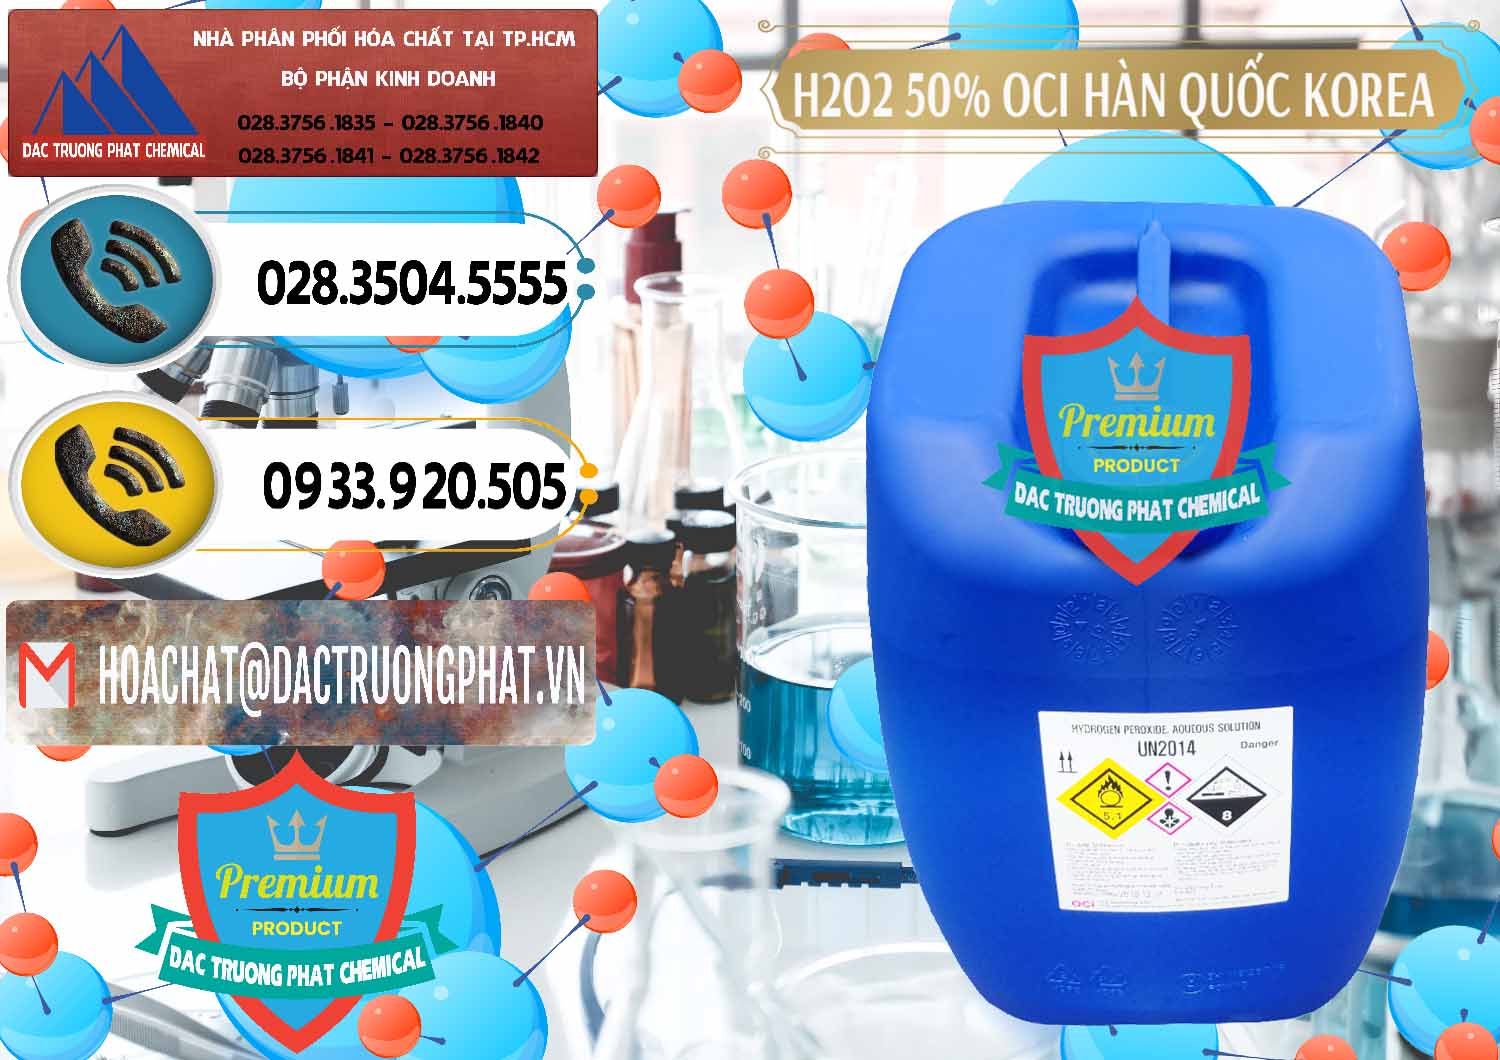 Đơn vị nhập khẩu và bán H2O2 - Hydrogen Peroxide 50% OCI Hàn Quốc Korea - 0075 - Cty chuyên phân phối và kinh doanh hóa chất tại TP.HCM - hoachatdetnhuom.vn